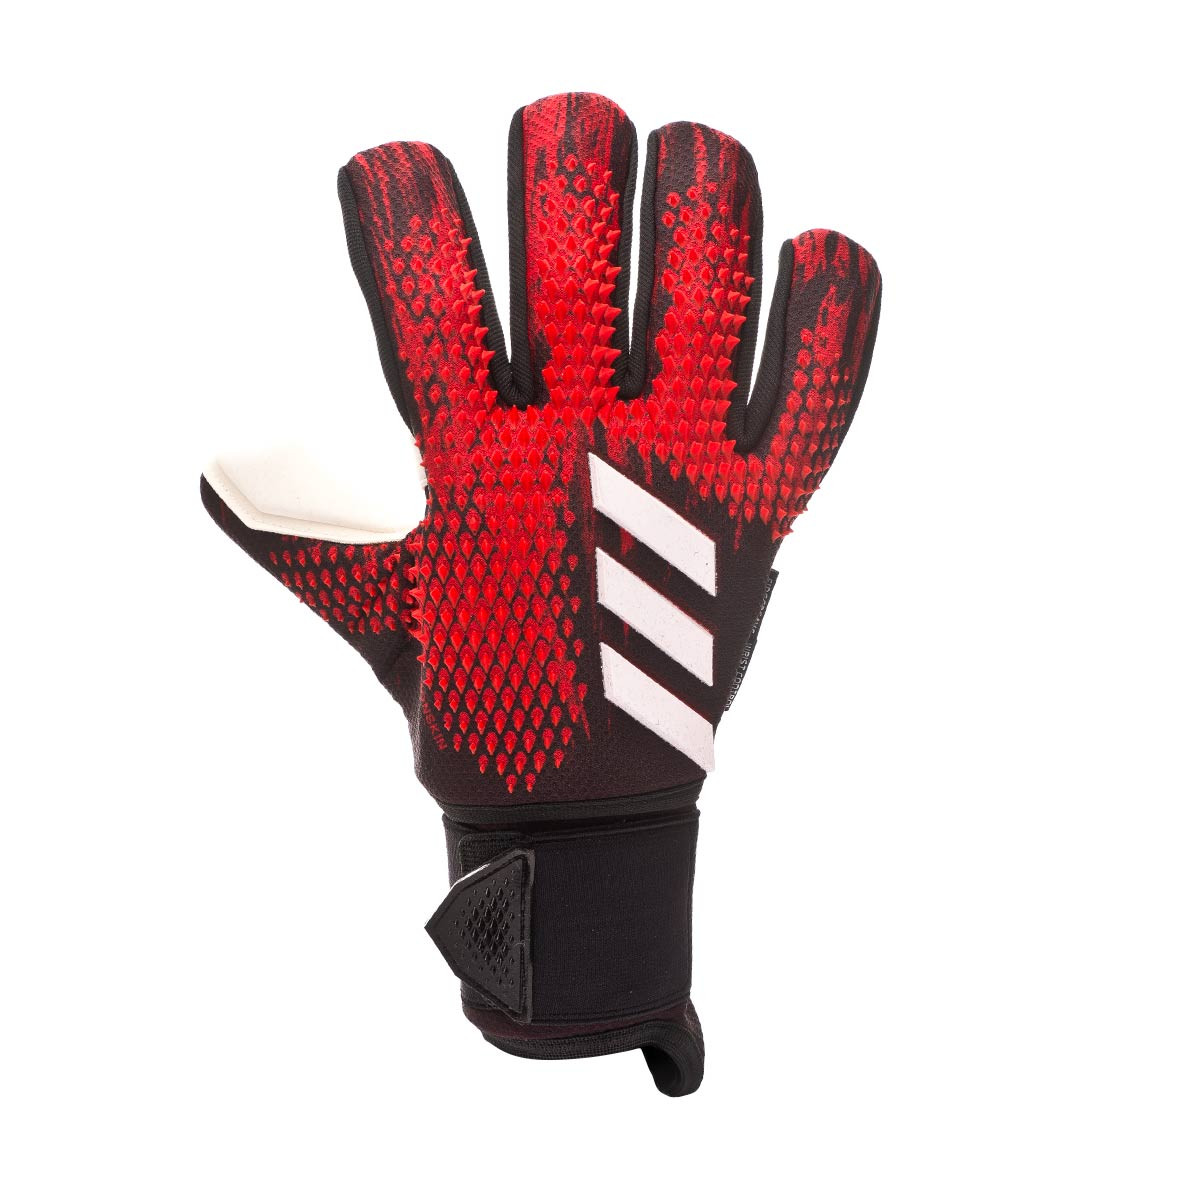 predator 20 ultimate pro gloves